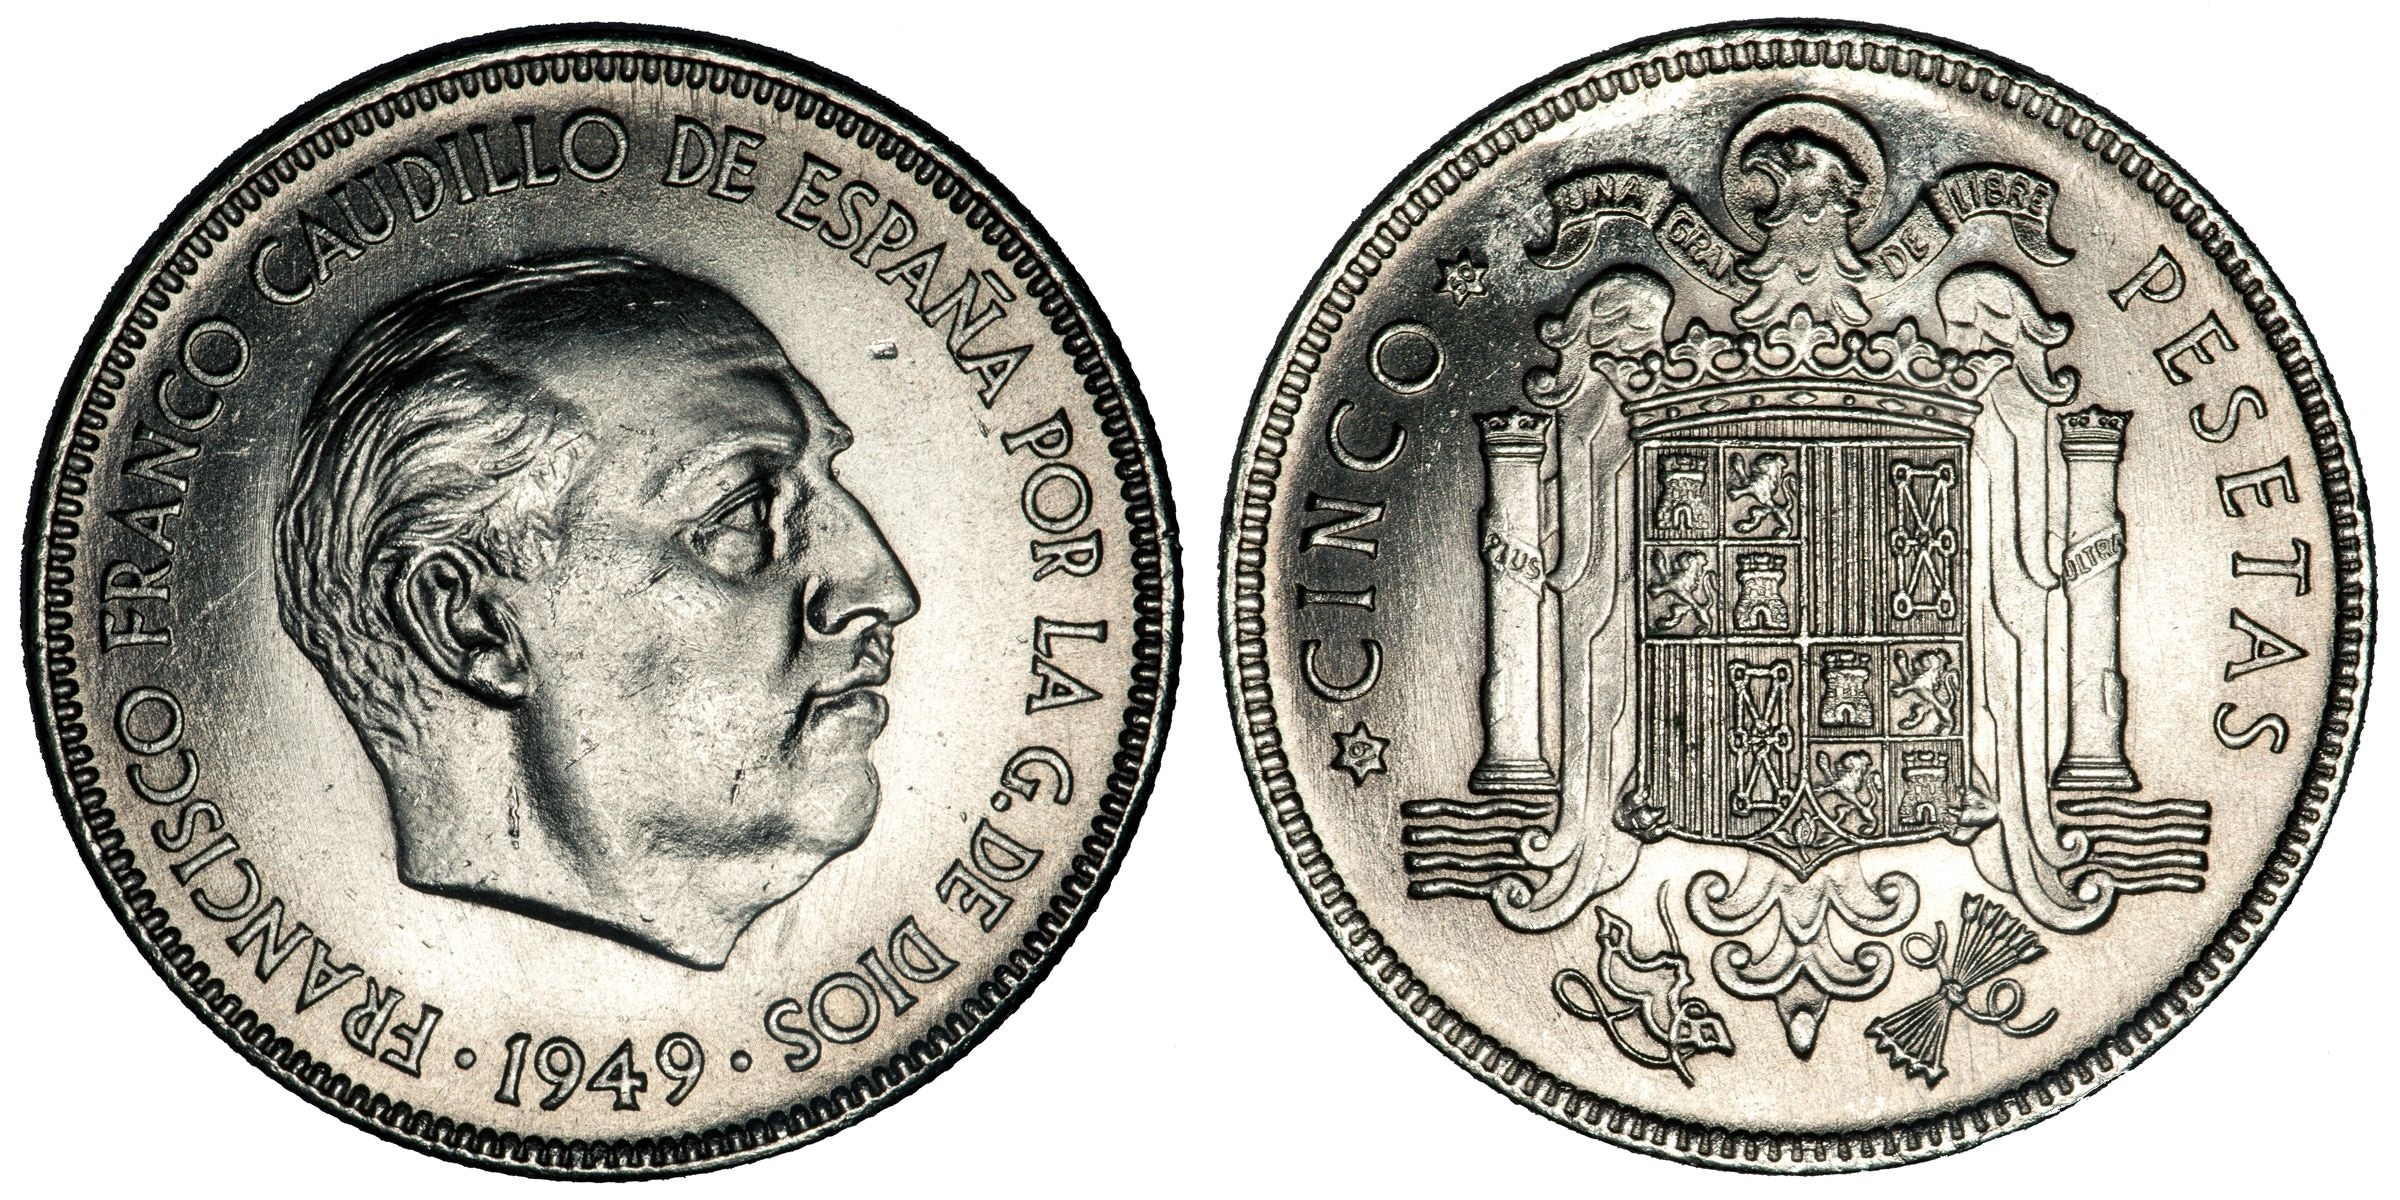 2 silver round coins